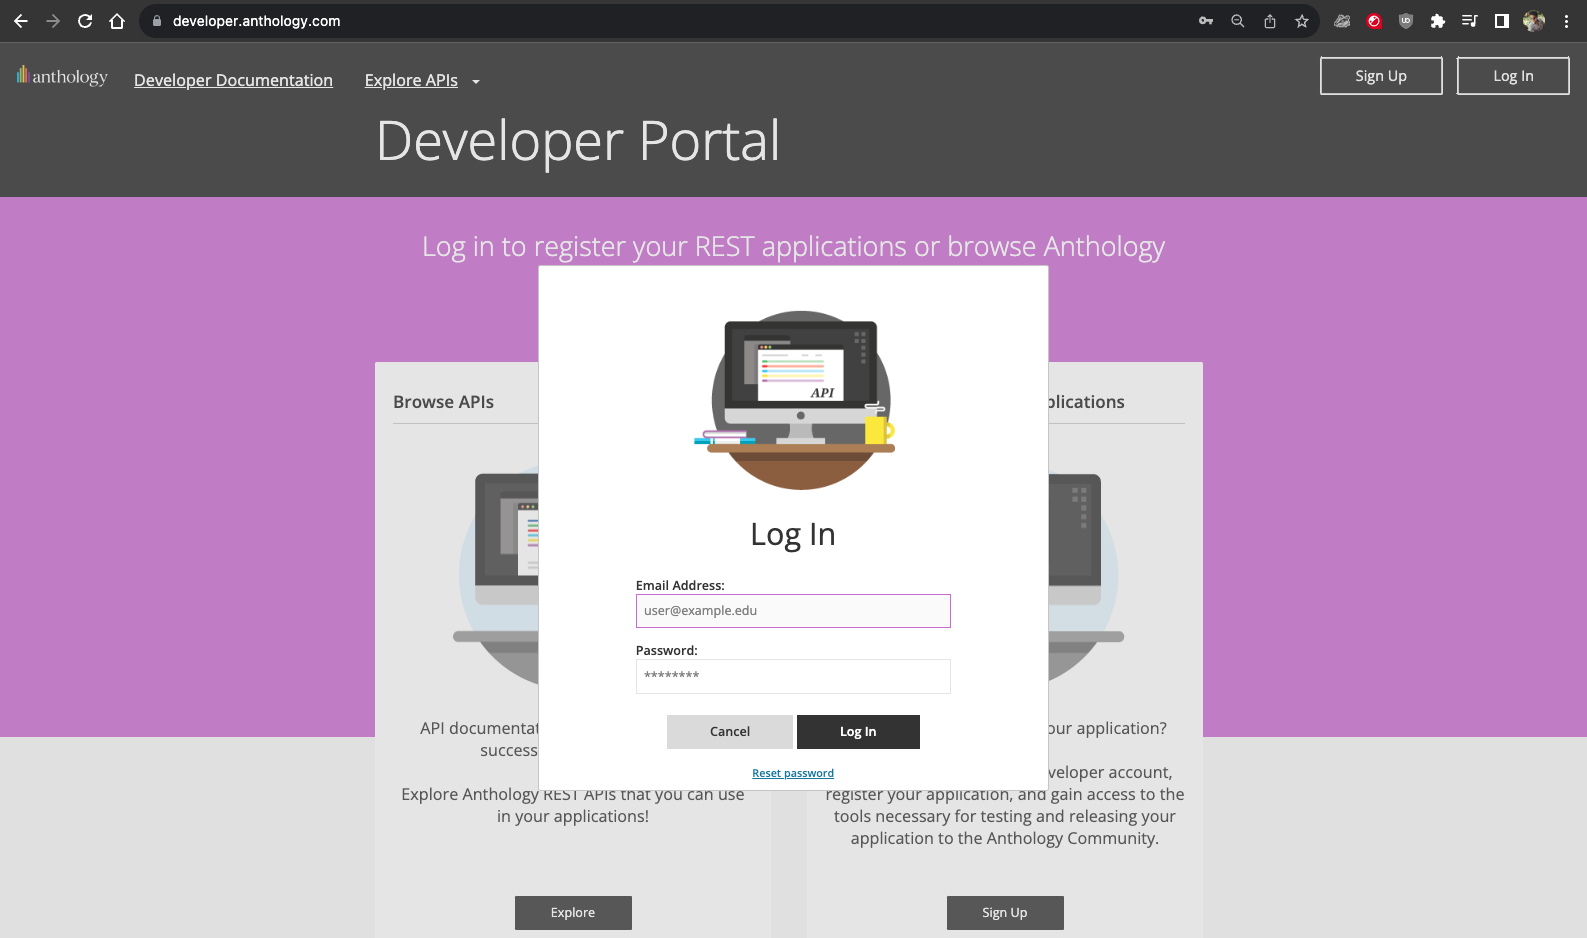 Developer portal login modal window